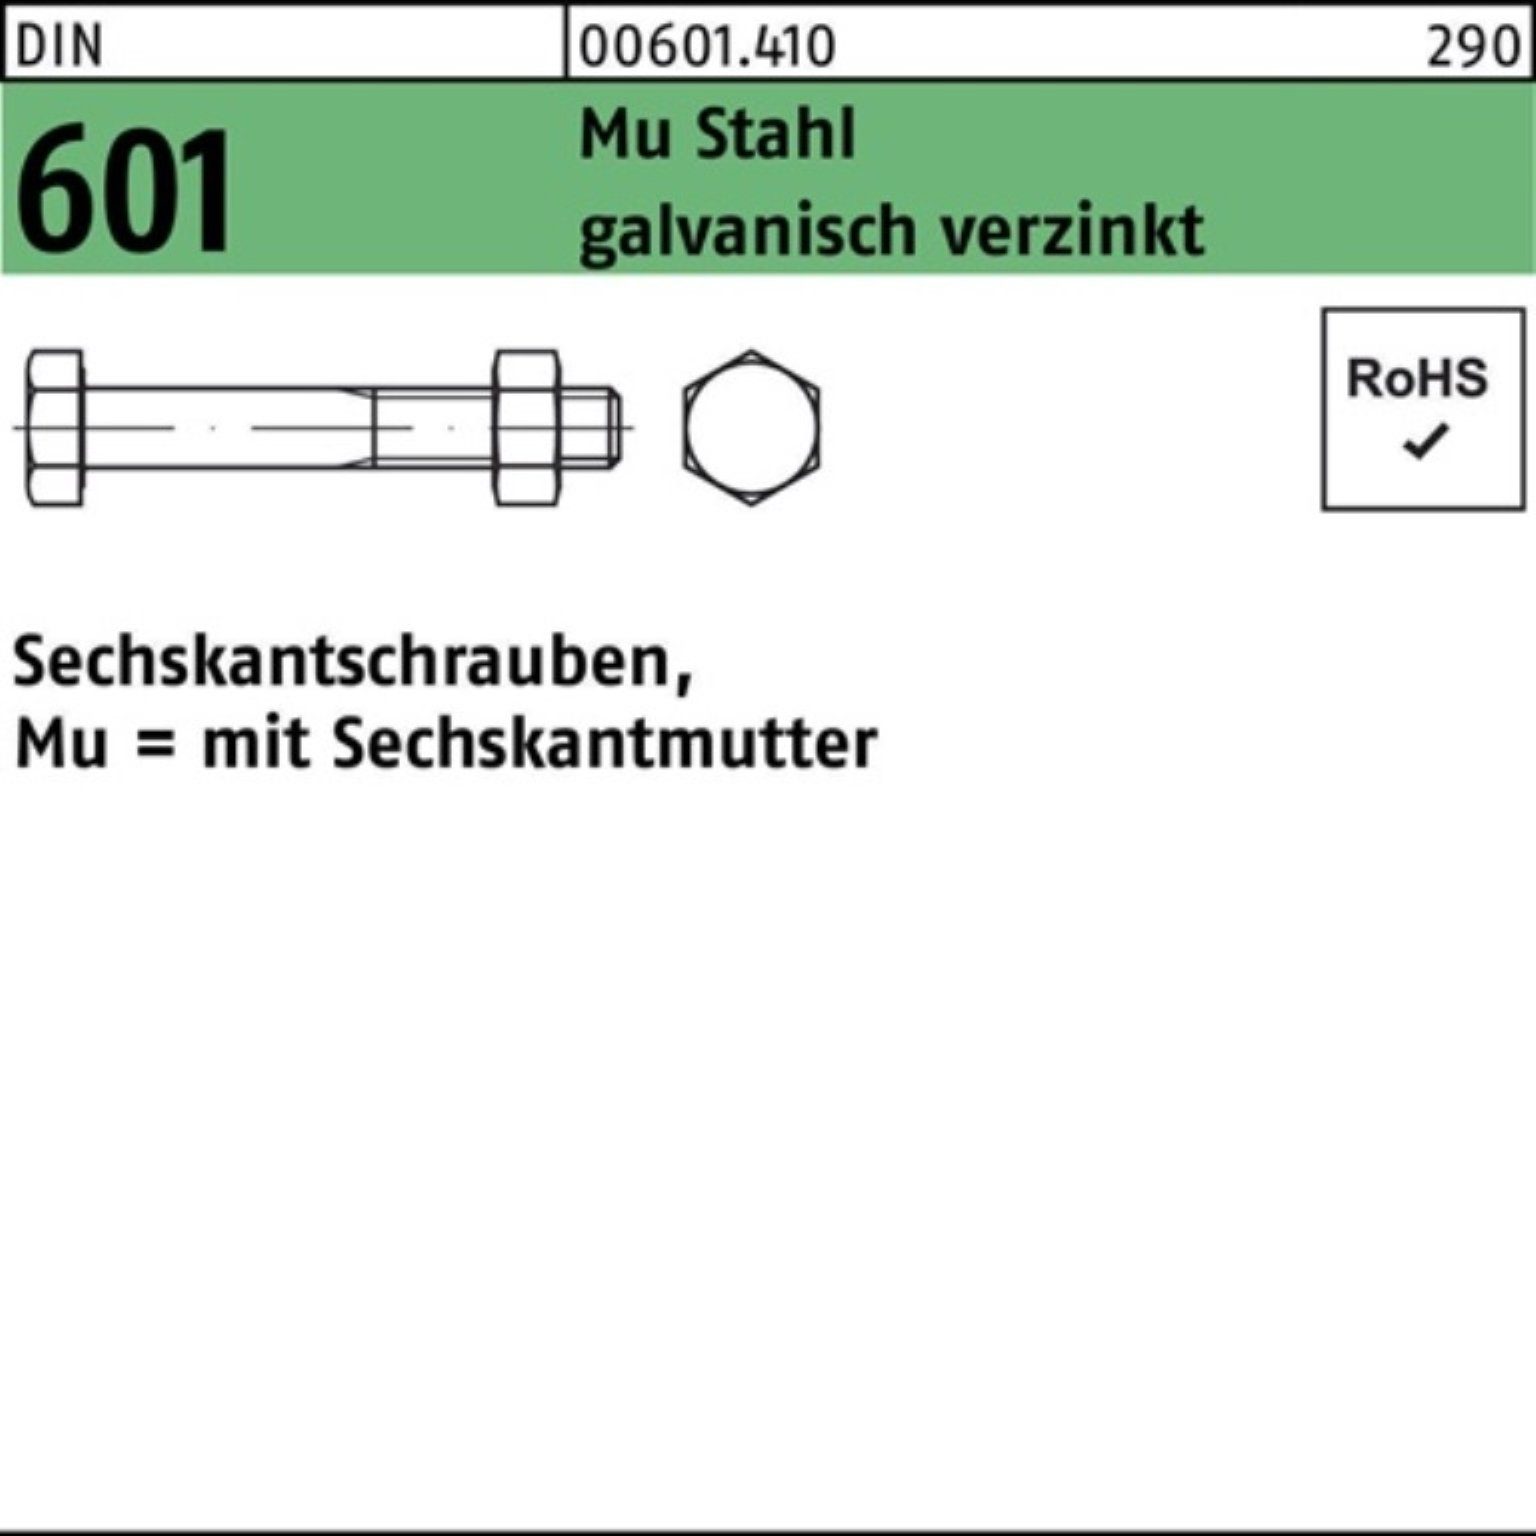 Reyher Sechskantmutter 200er Pack Sechskantschraube DIN 601 Sechskantmutter M6x70 Mu Stahl 4.